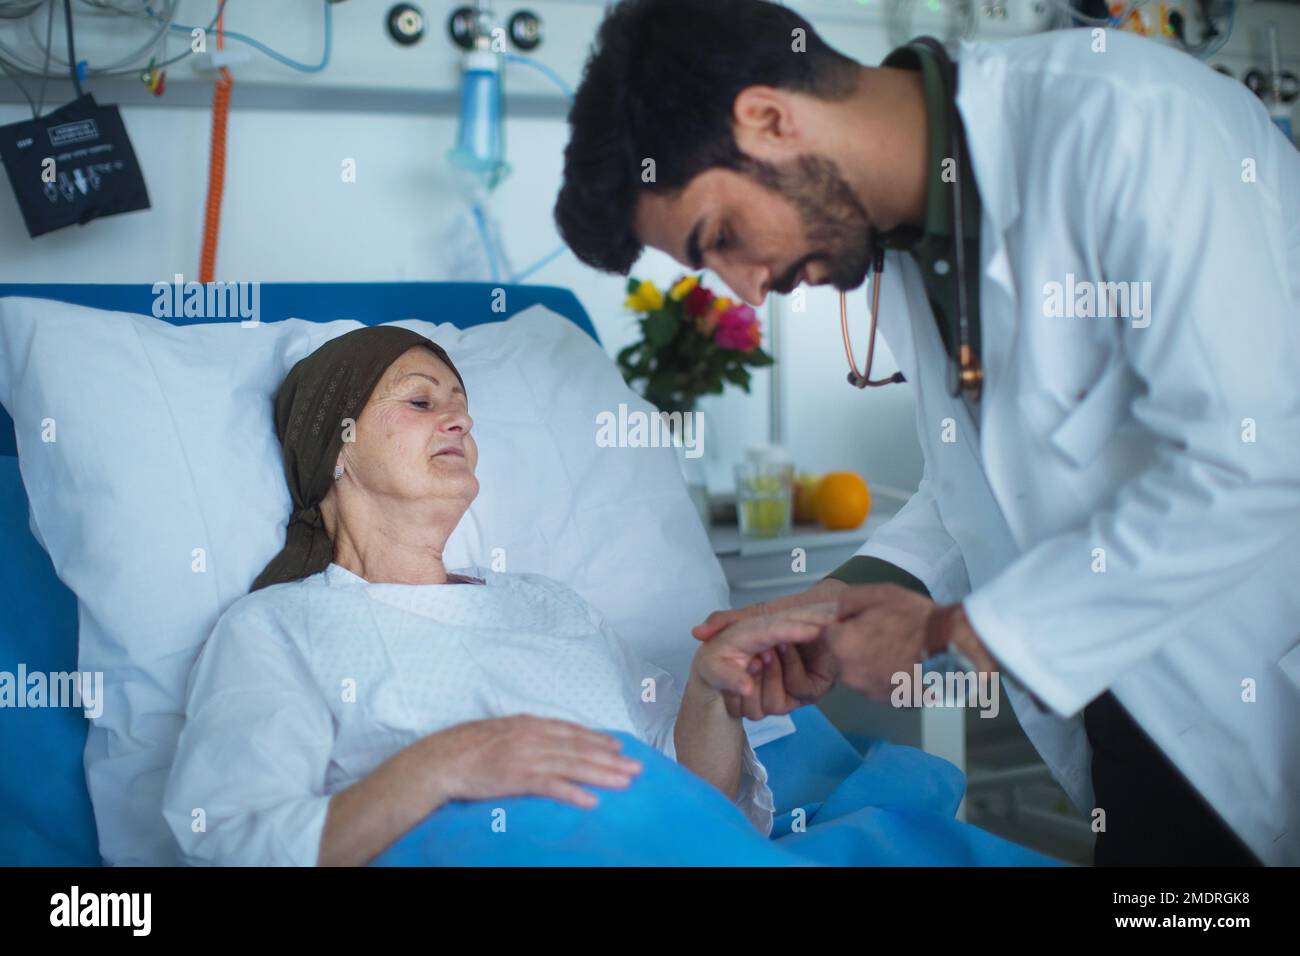 Giovane medico mediorientale che esamina il paziente con cancro in ospedale. Foto Stock